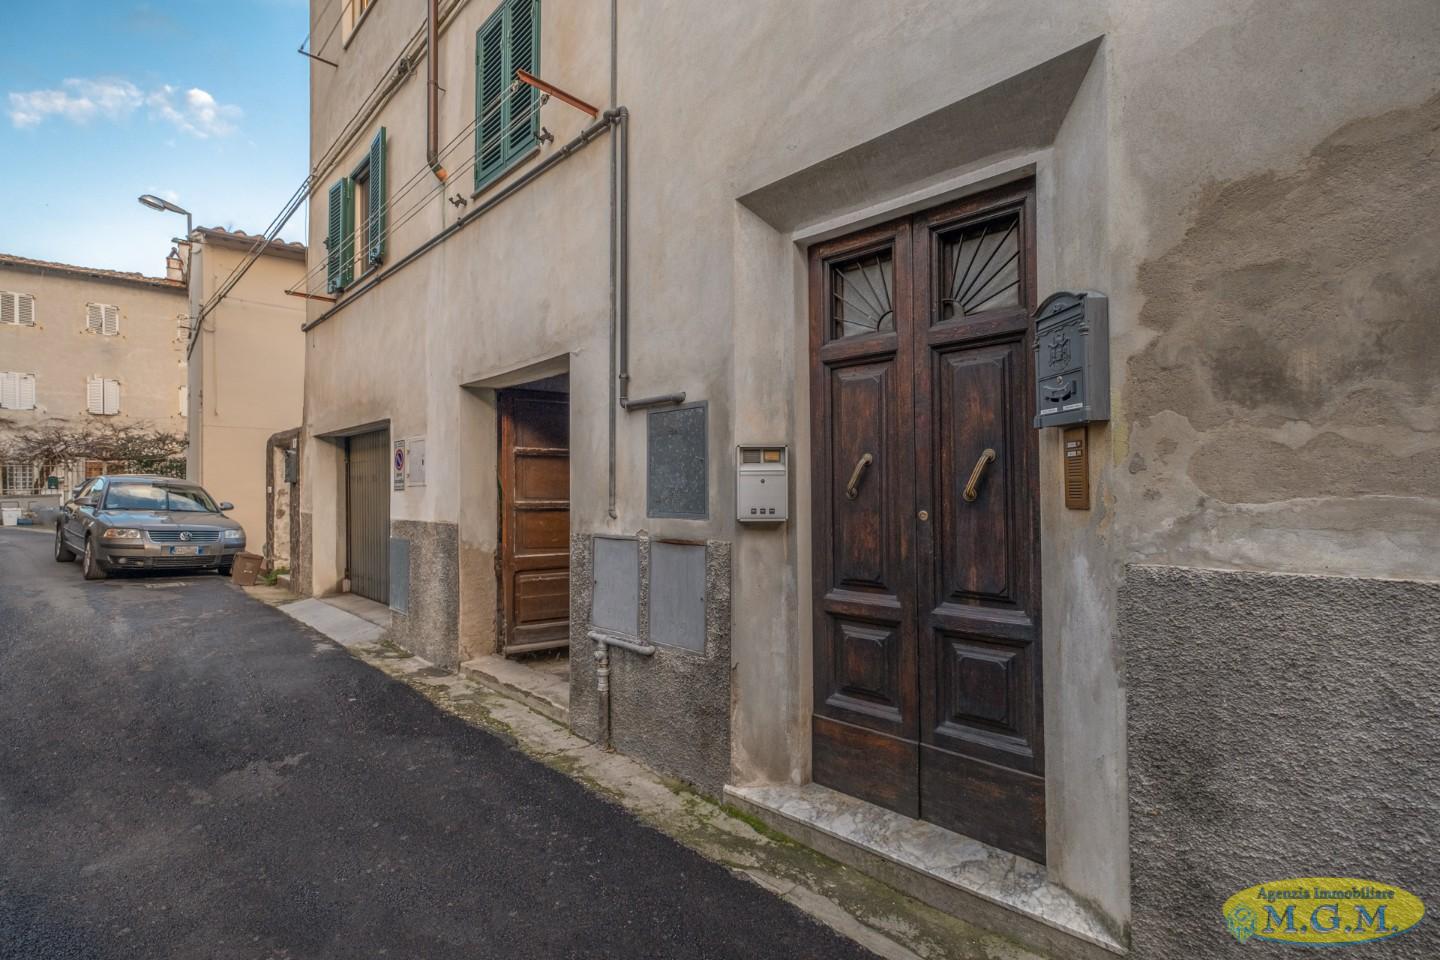 Appartamento in vendita a Vicopisano, 3 locali, prezzo € 45.000 | PortaleAgenzieImmobiliari.it